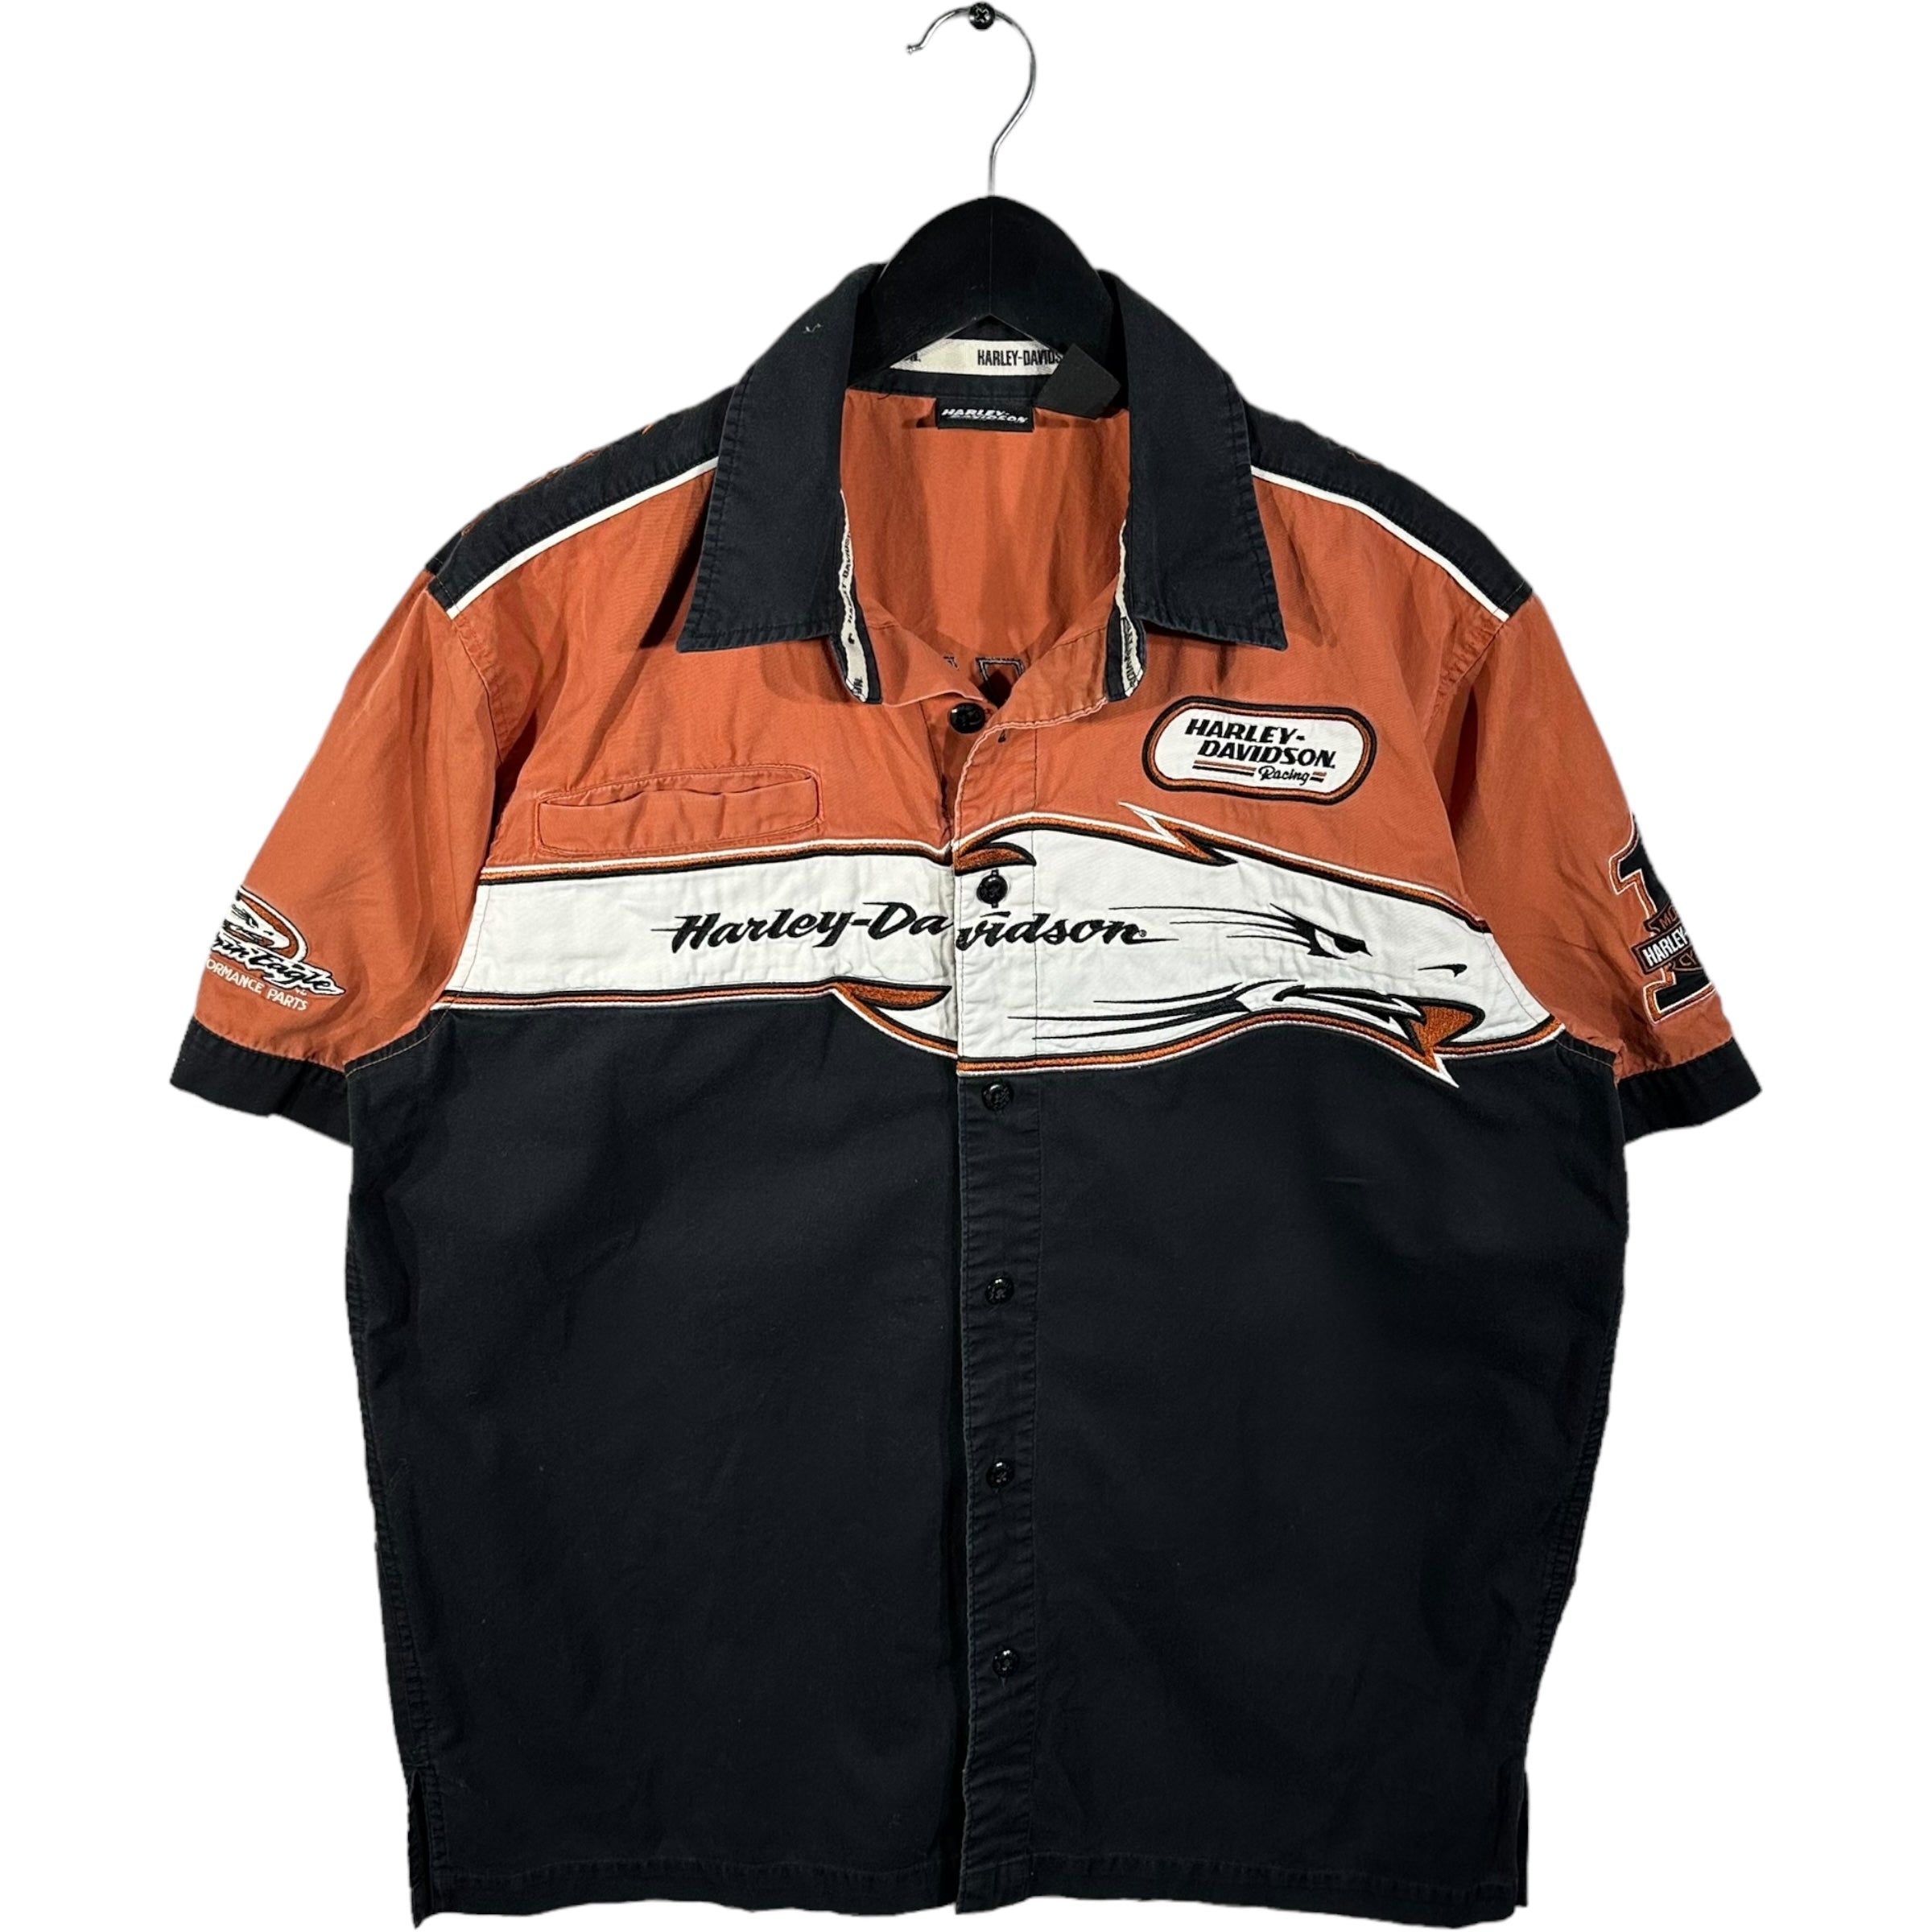 Vintage Harley Davidson Racing Eagle Short Sleeve Button Up